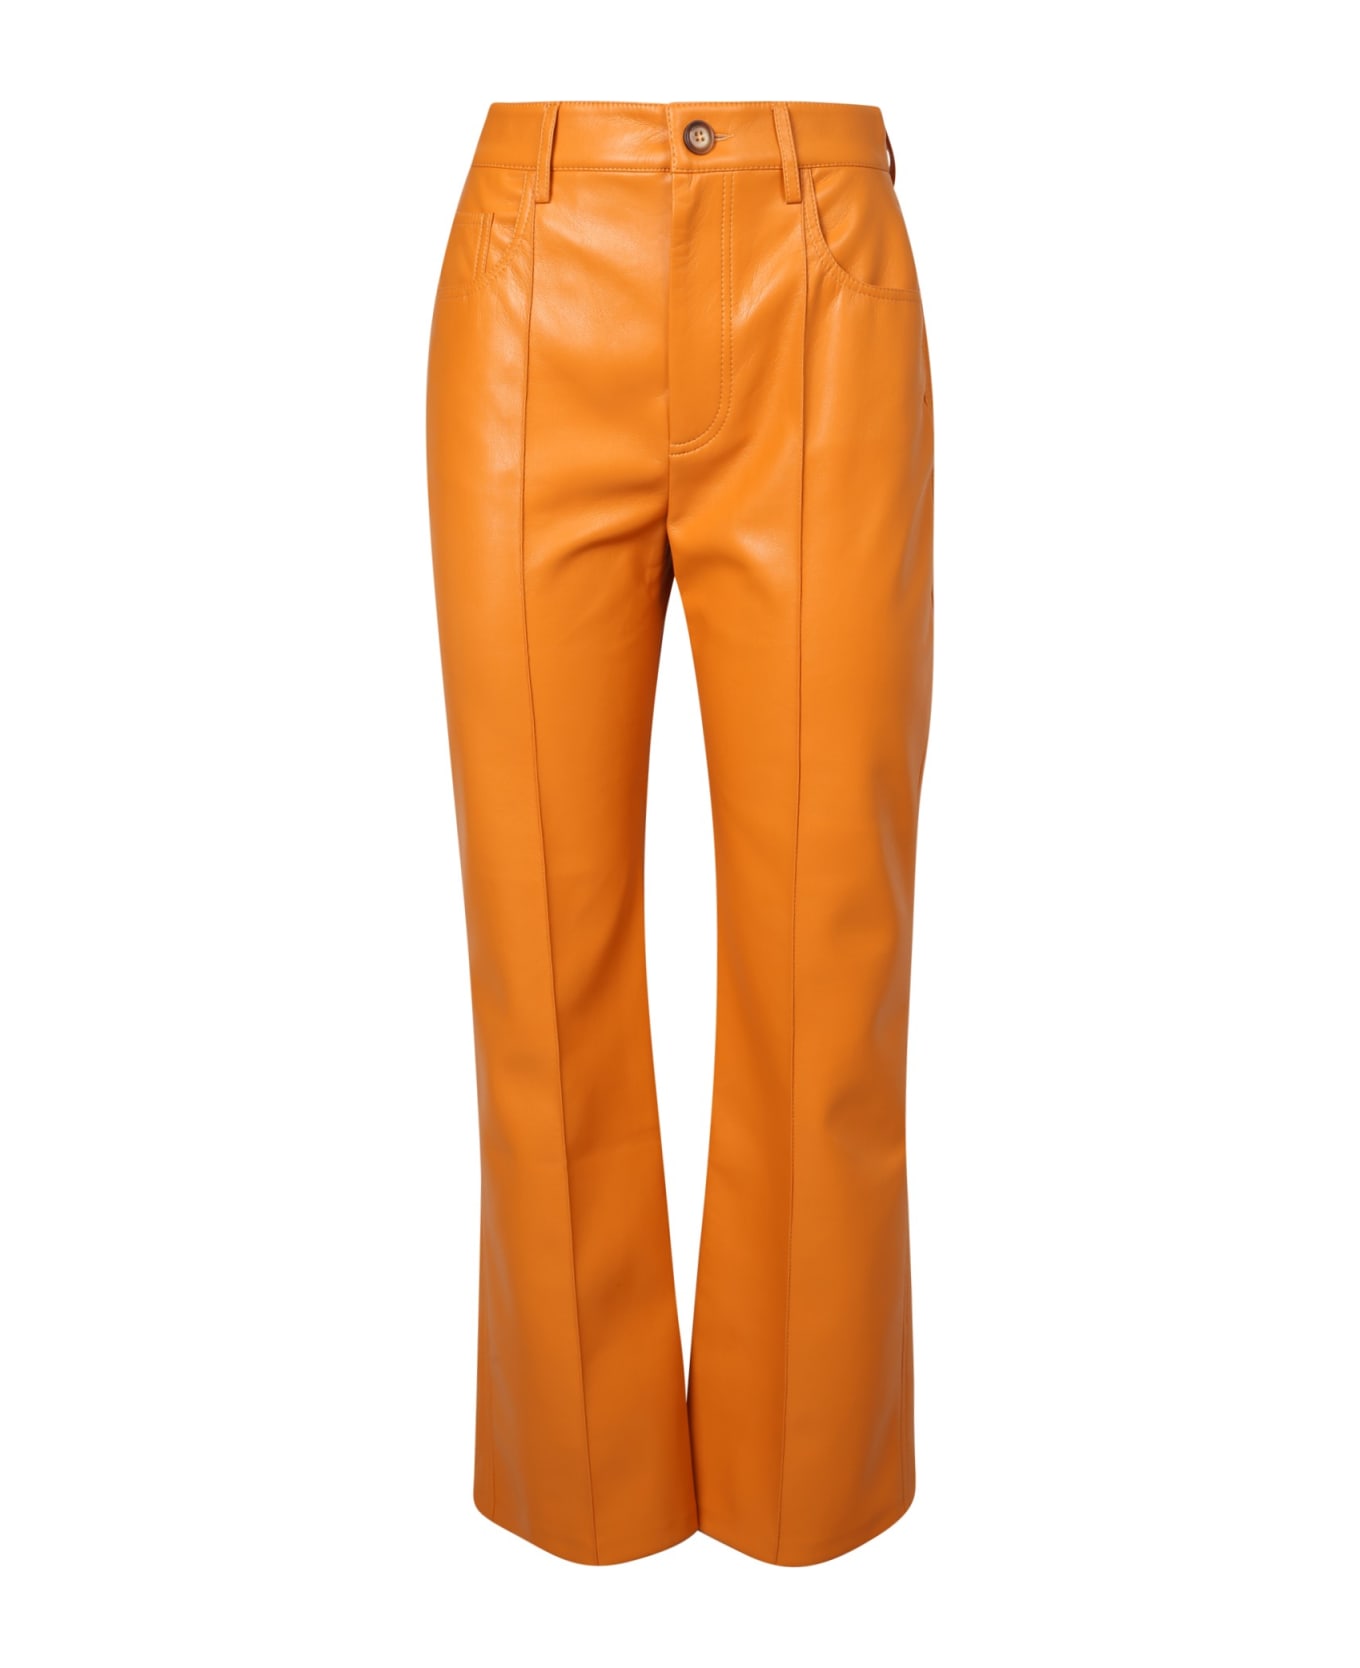 Nanushka Flared Trousers - Orange ボトムス